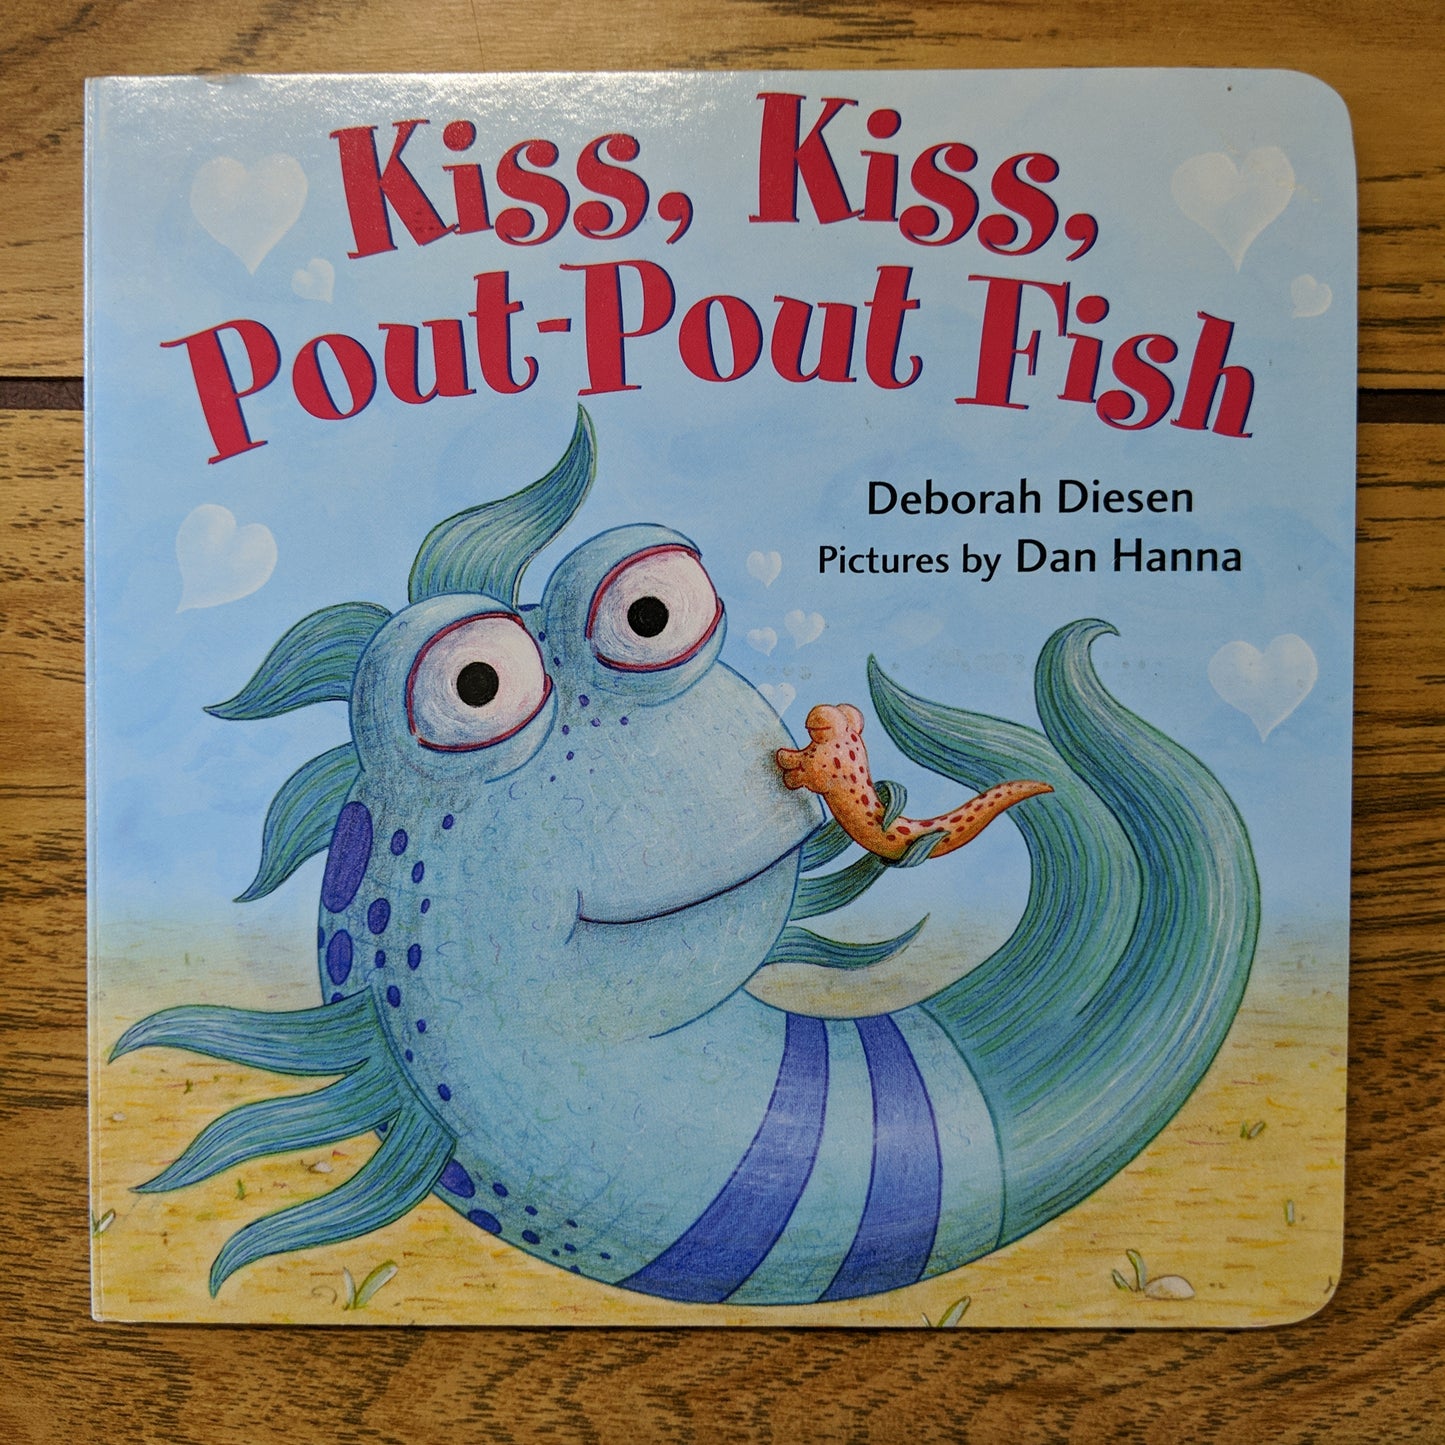 Kiss, Kiss, Pout-Pout Fish